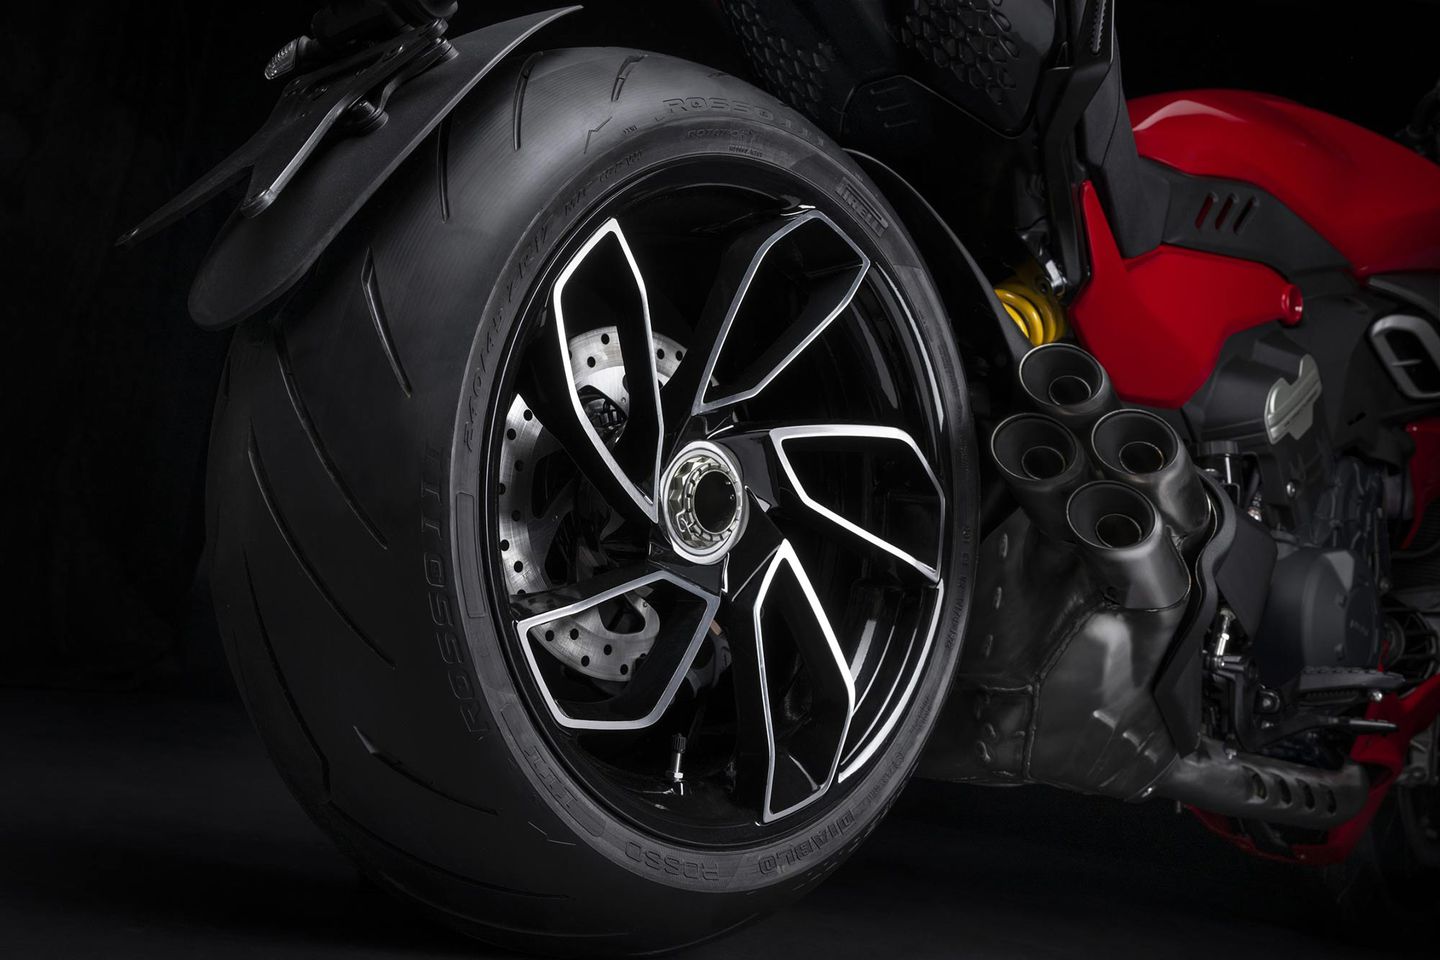 2023 Ducati Diavel rear tire